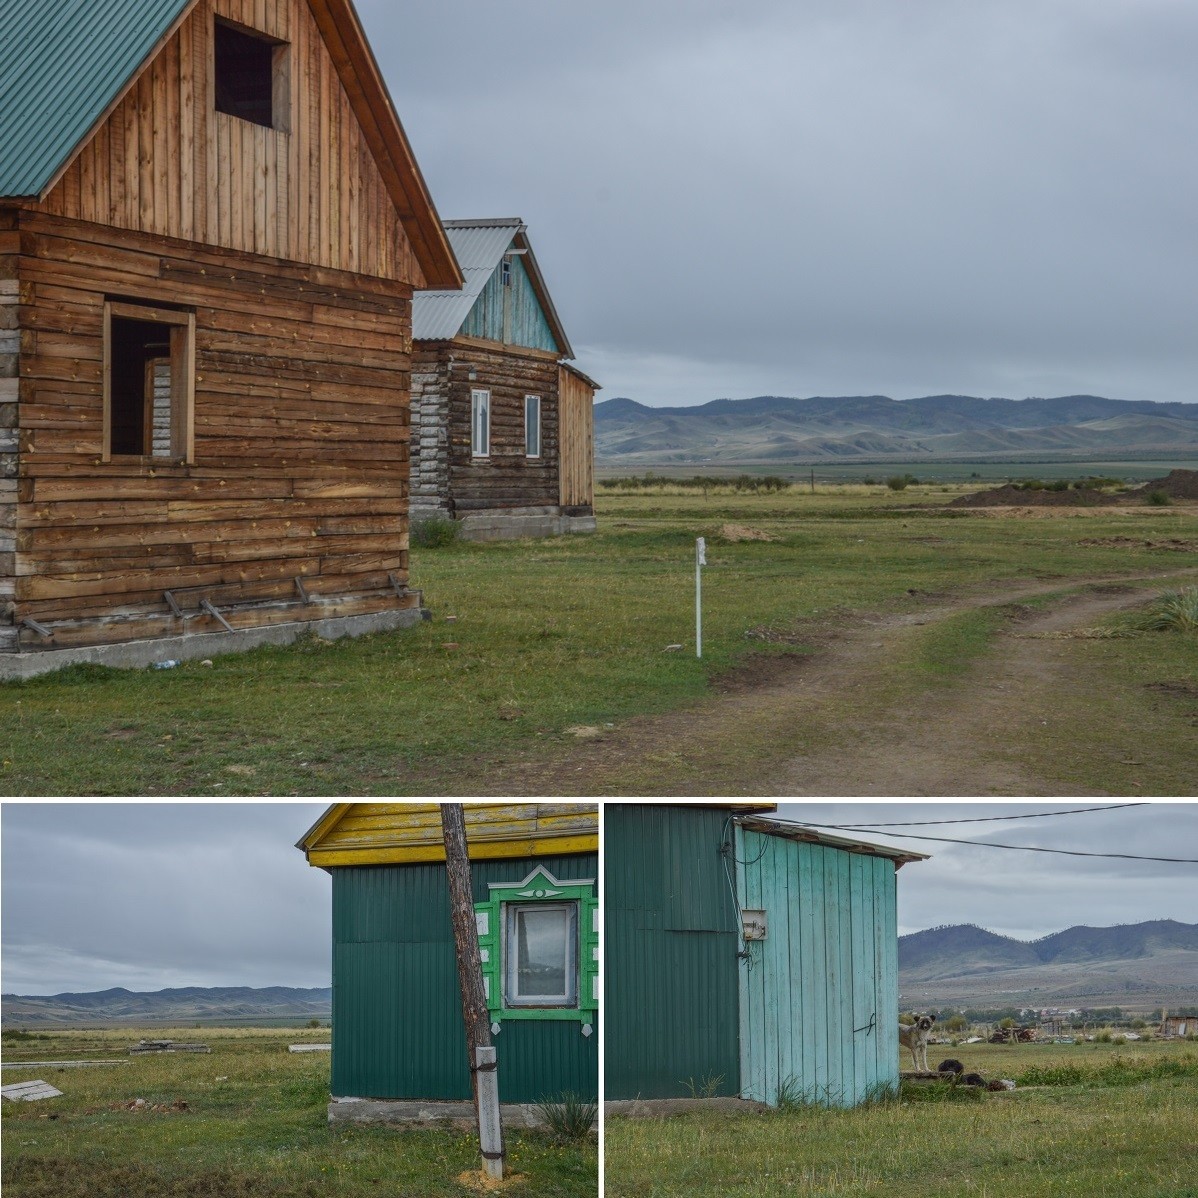 小さいバスの窓から覗くブリヤート共和国は、この国に特徴的な木造の家々と、多くの遊牧民の故郷となっている南シベリアに典型的な草木の少ない山々が織りなす風景が広がっている。